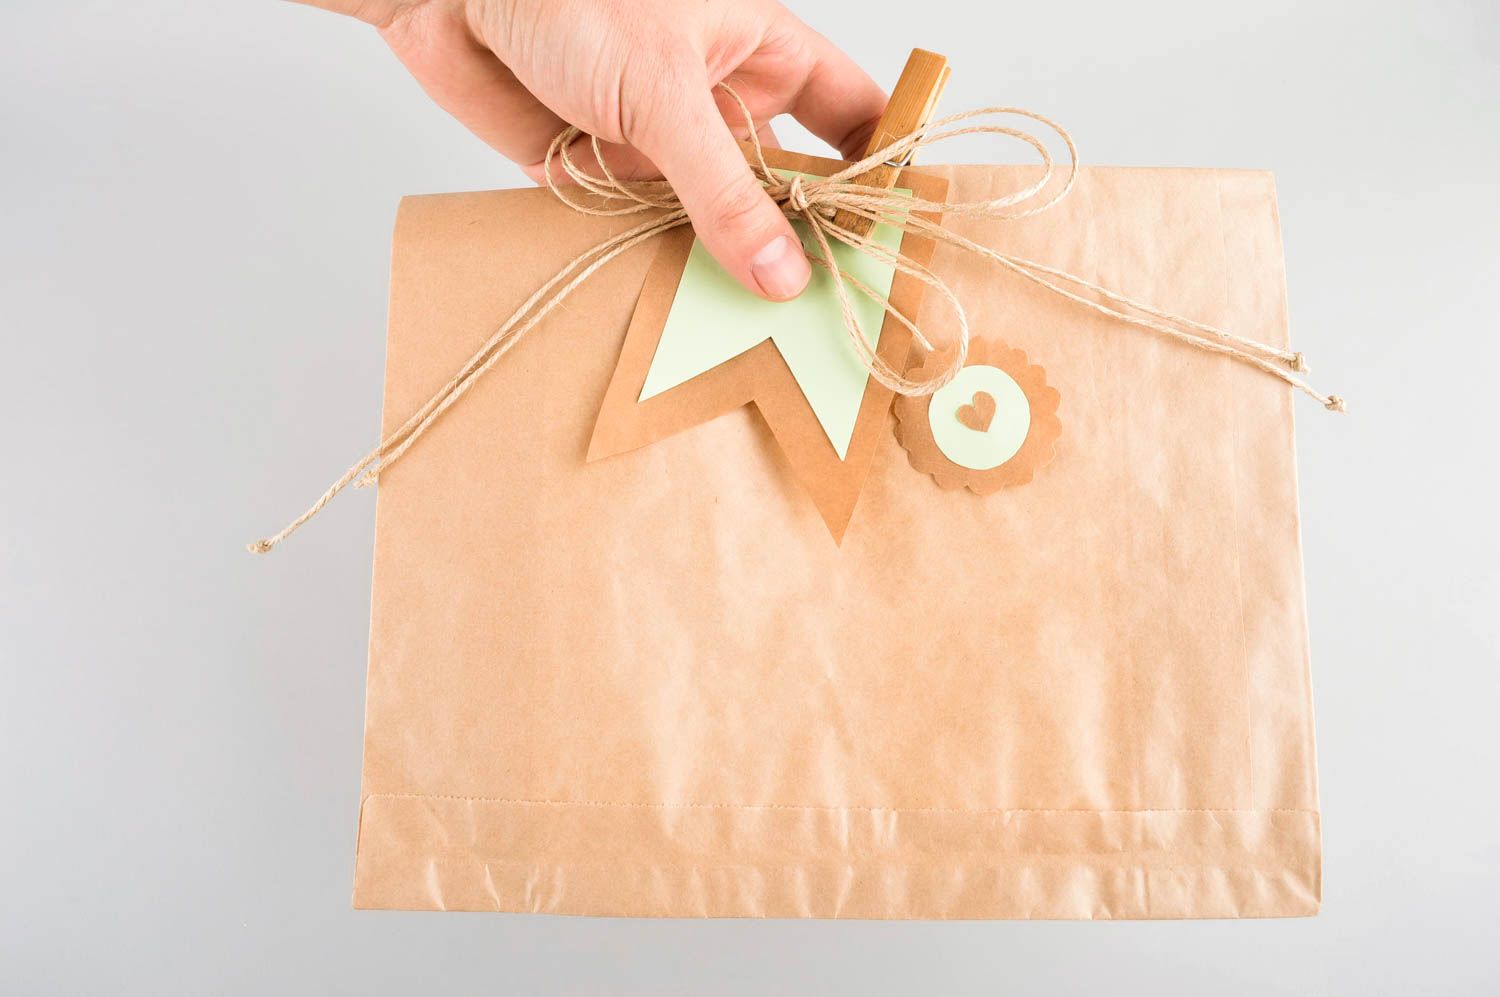 Handmade Verpackung für Geldgeschenke kreative Geschenkidee Geschenk Umschlag foto 5